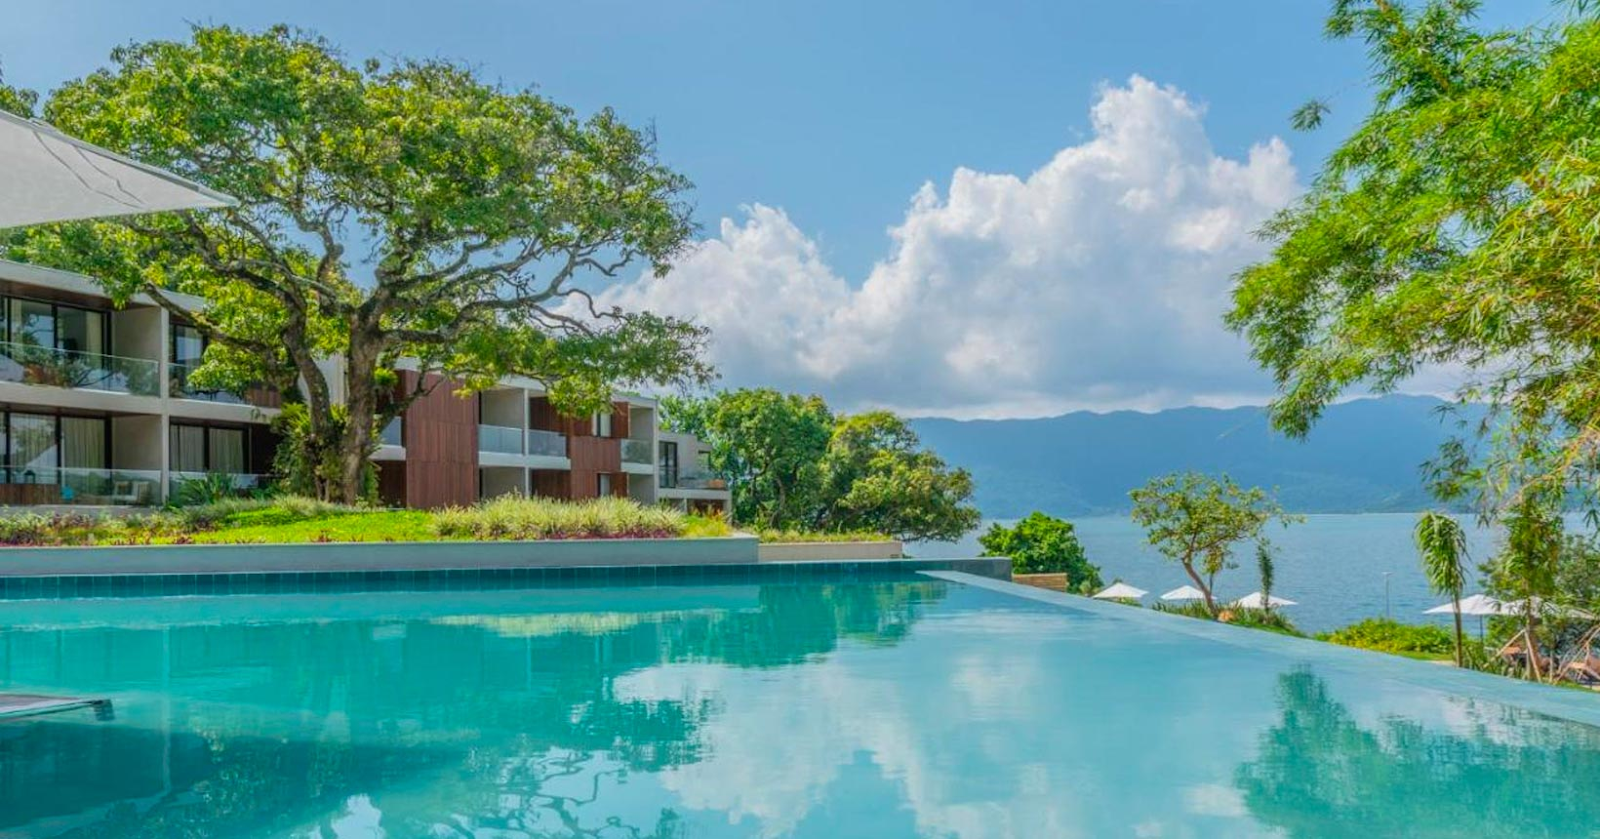 Piscina do Wyndham Casa di Sirena, em Ilhabela, no litoral norte de SP, é um dos hotéis da promoção do Zarpo